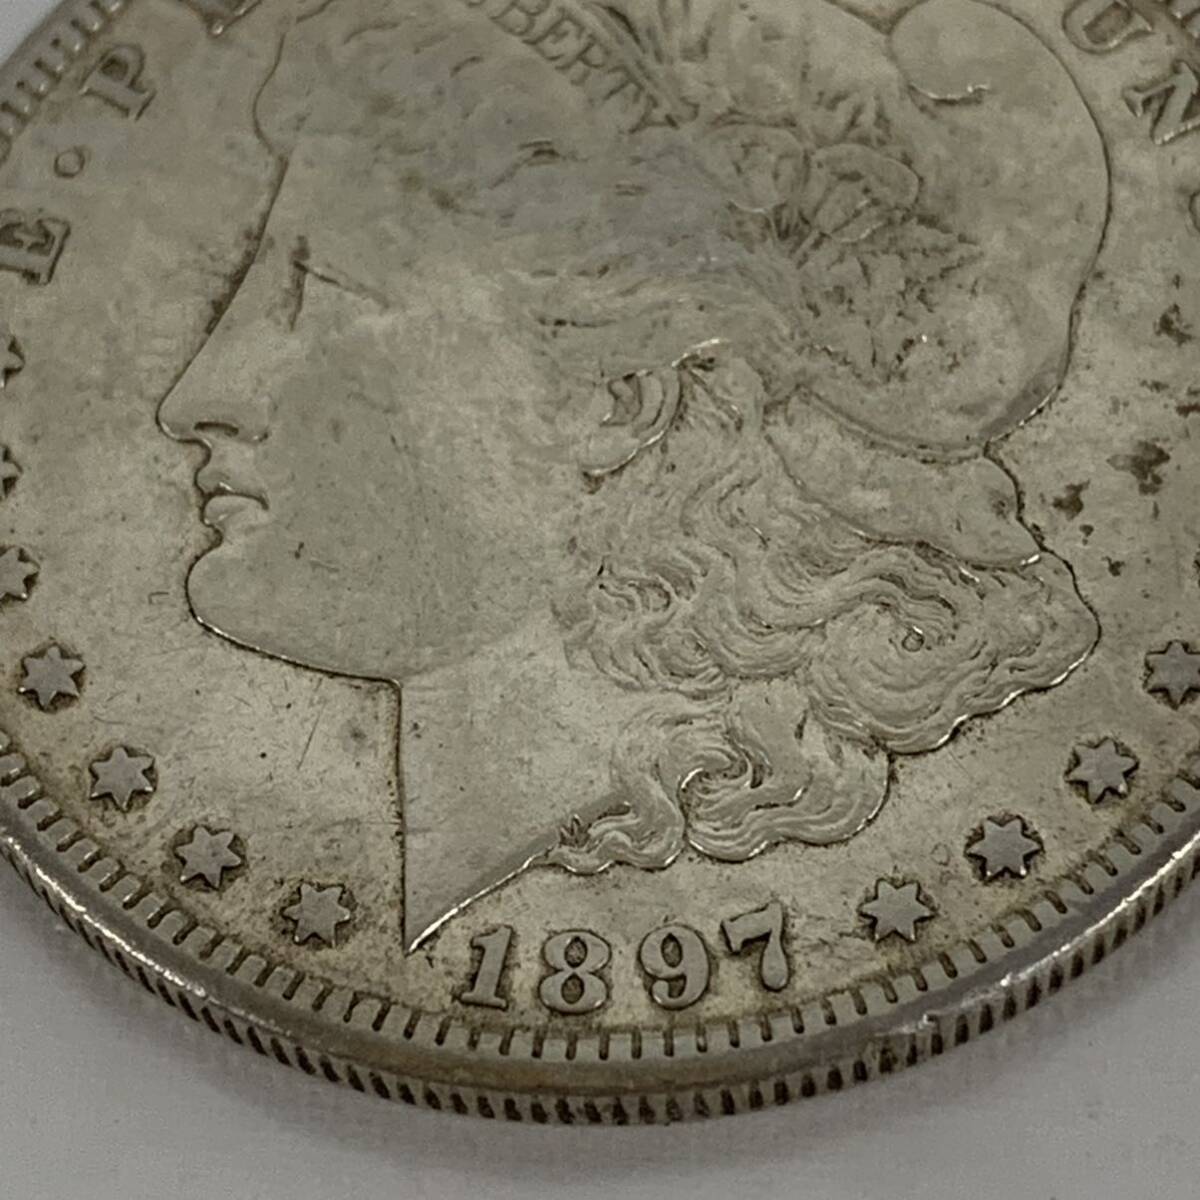  серебряная монета текущее состояние товар America 1879 год Morgan dala-1 доллар серебряная монета 1879 год монета монета ka4